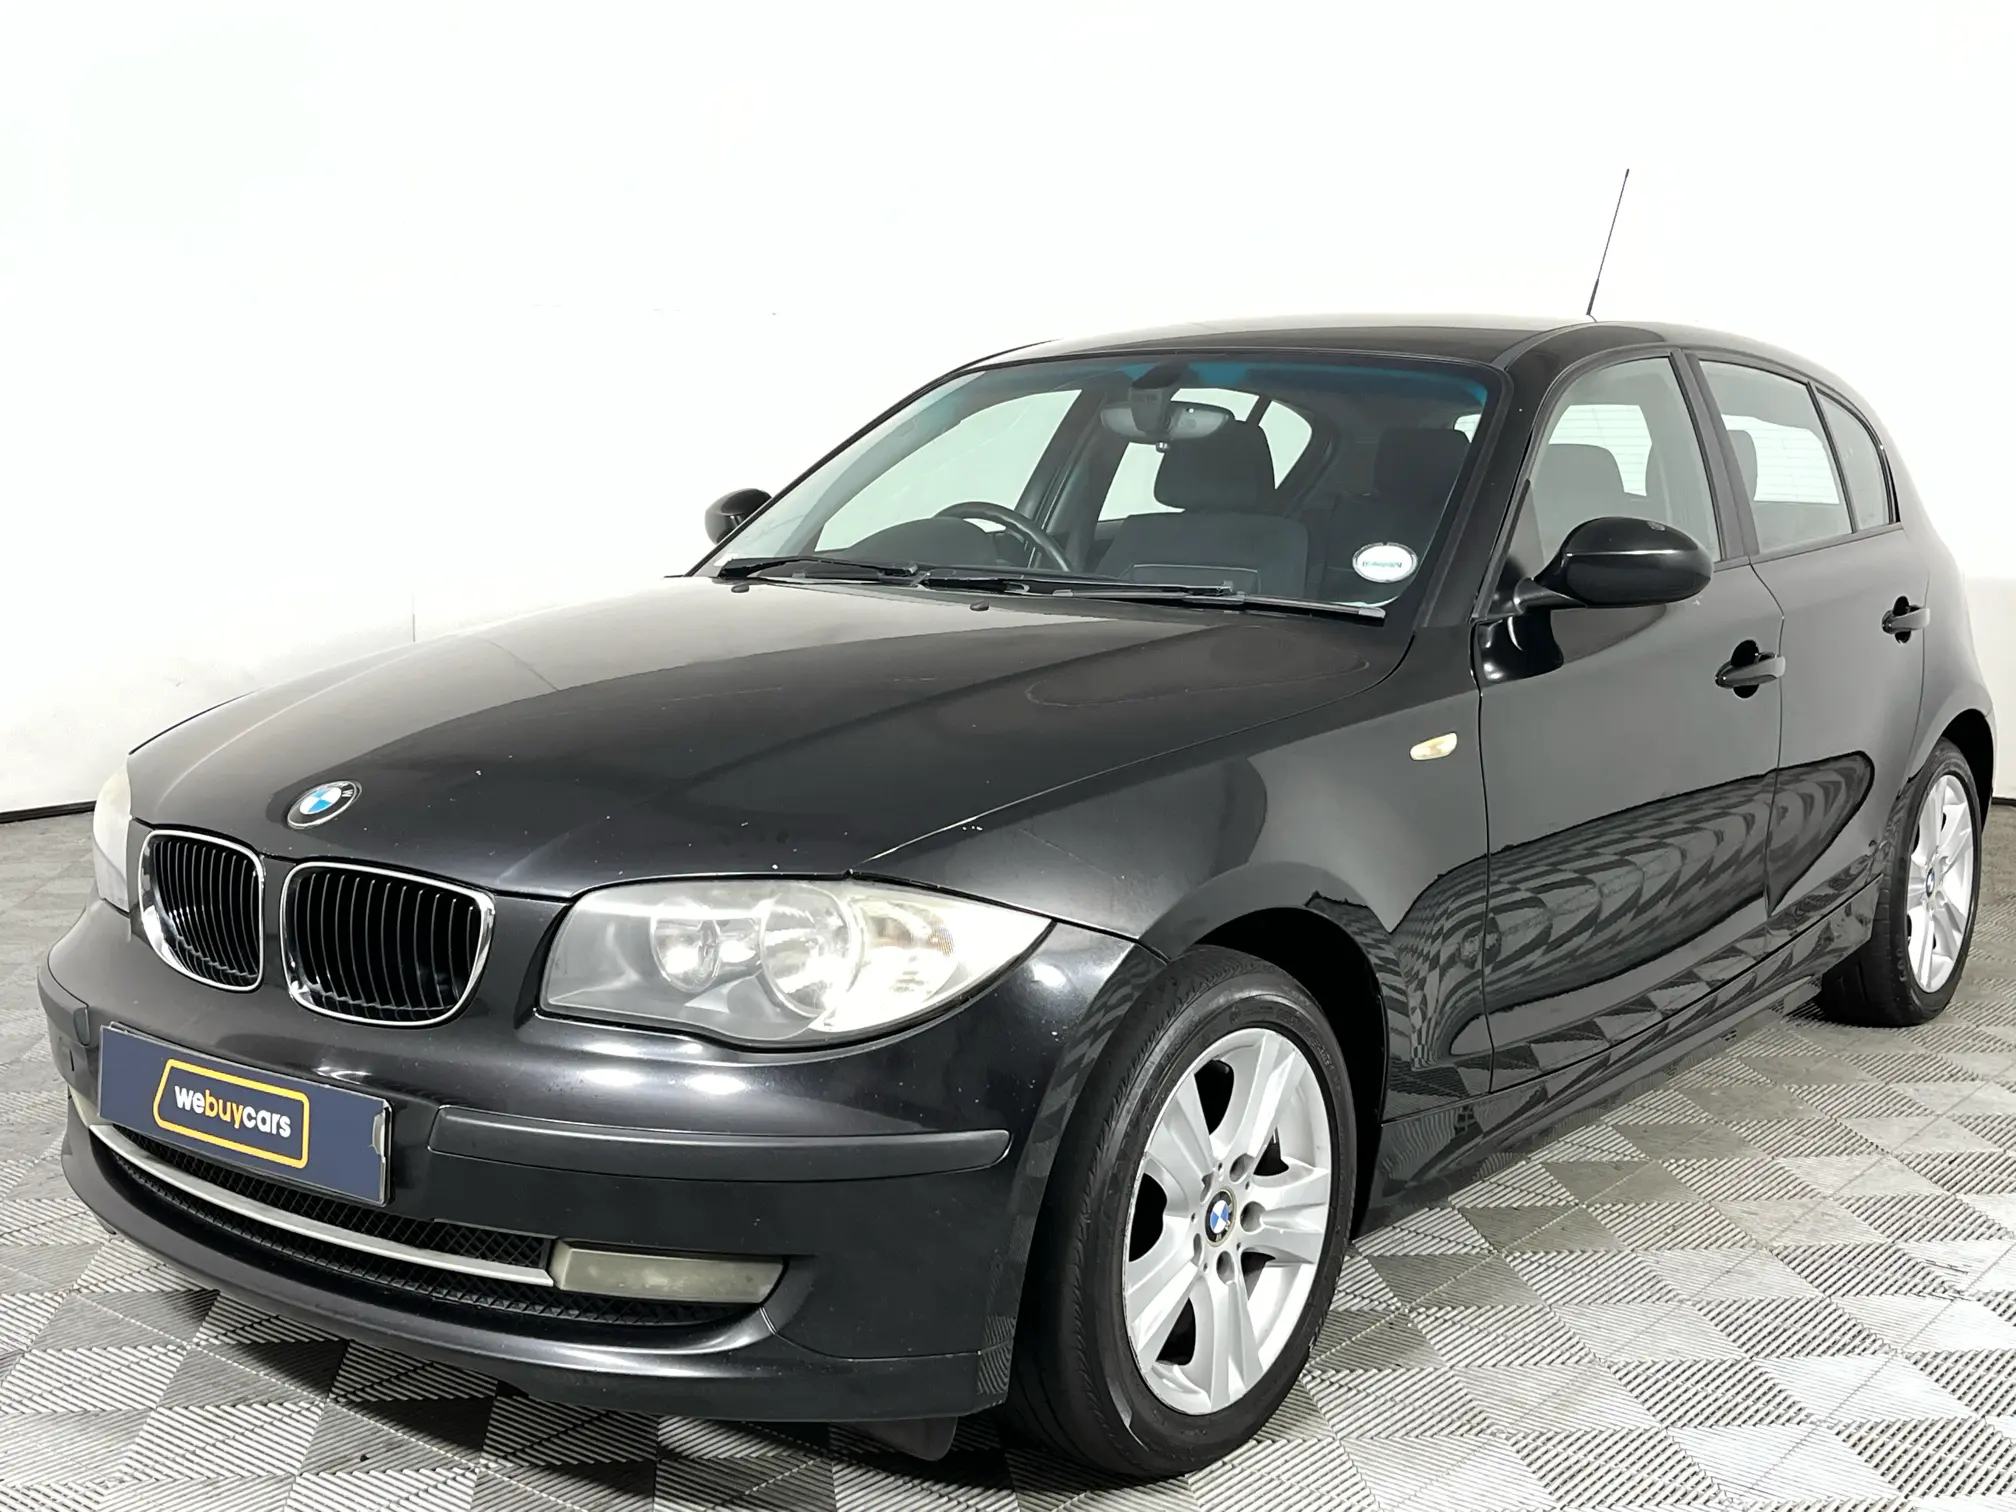 2007 BMW 1 Series 116i (E87)